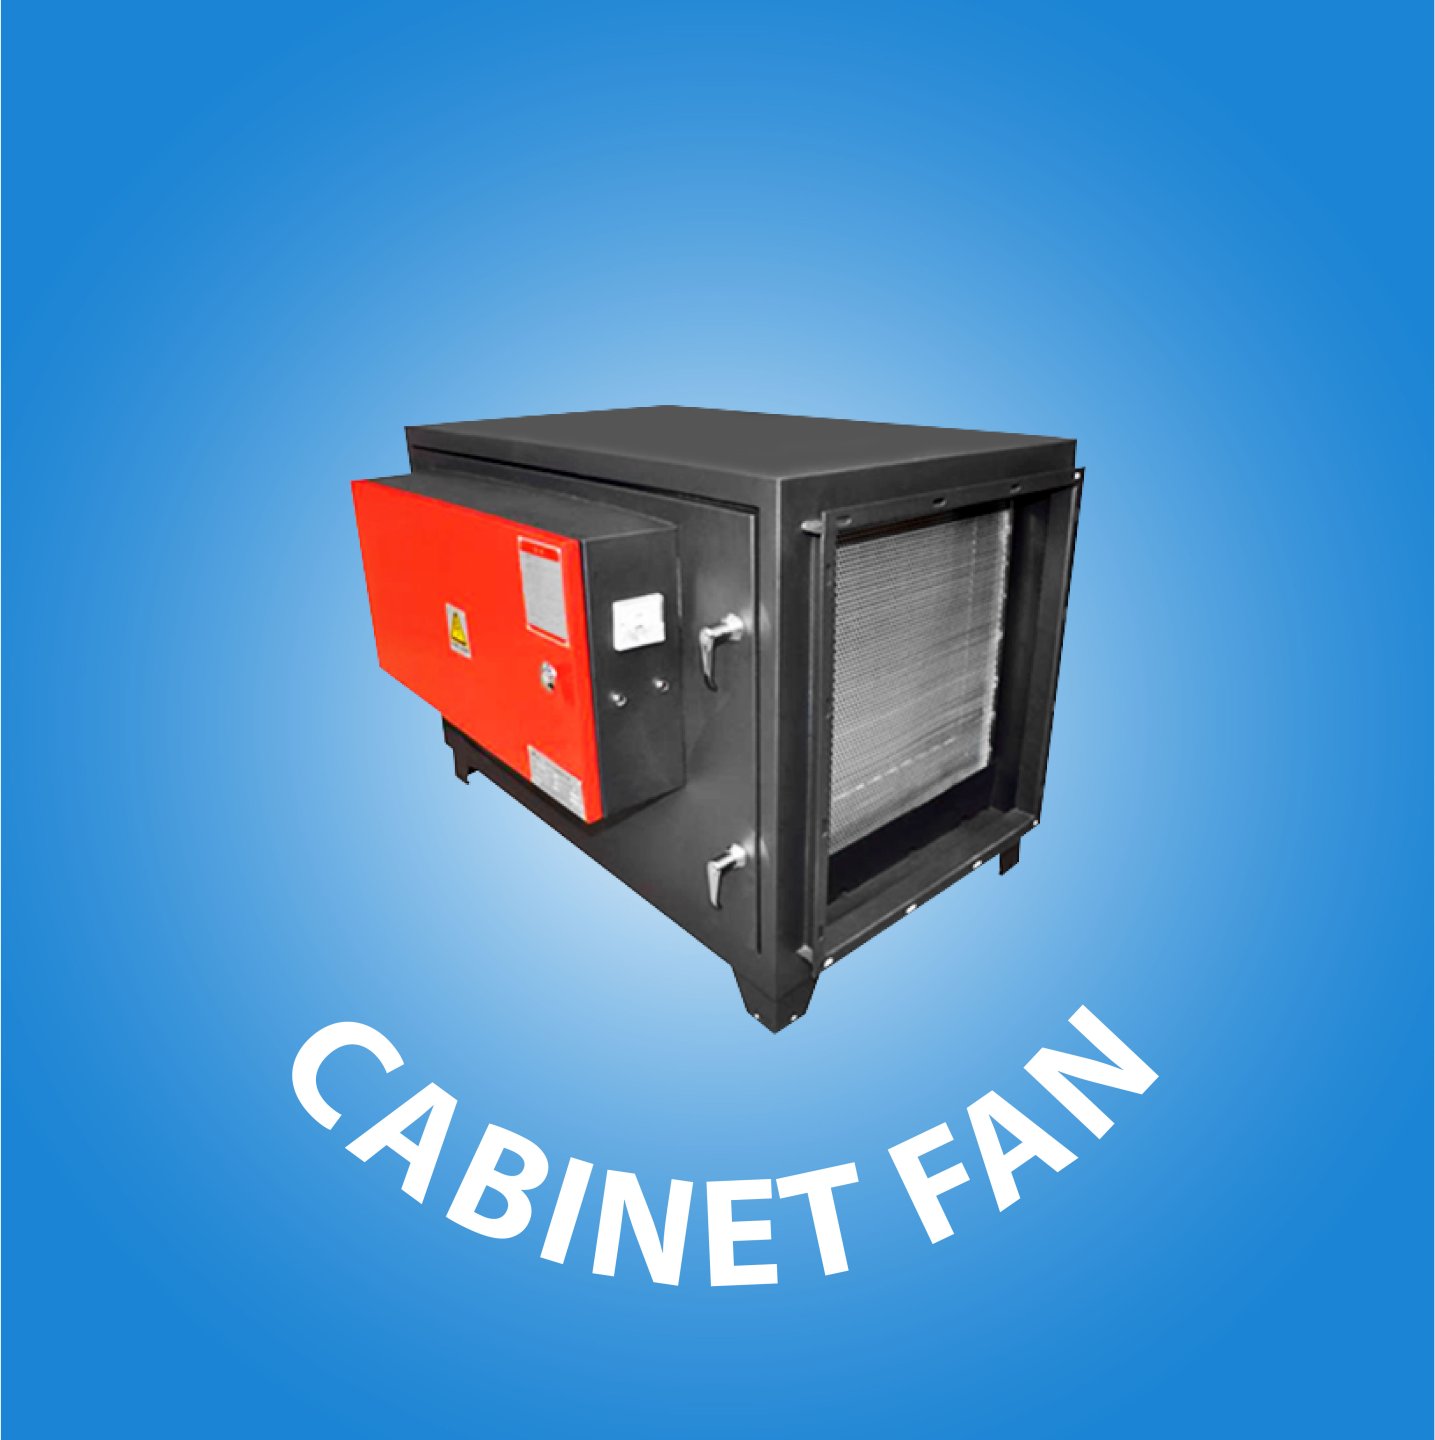  Cabinet Fan cover kategori website 08